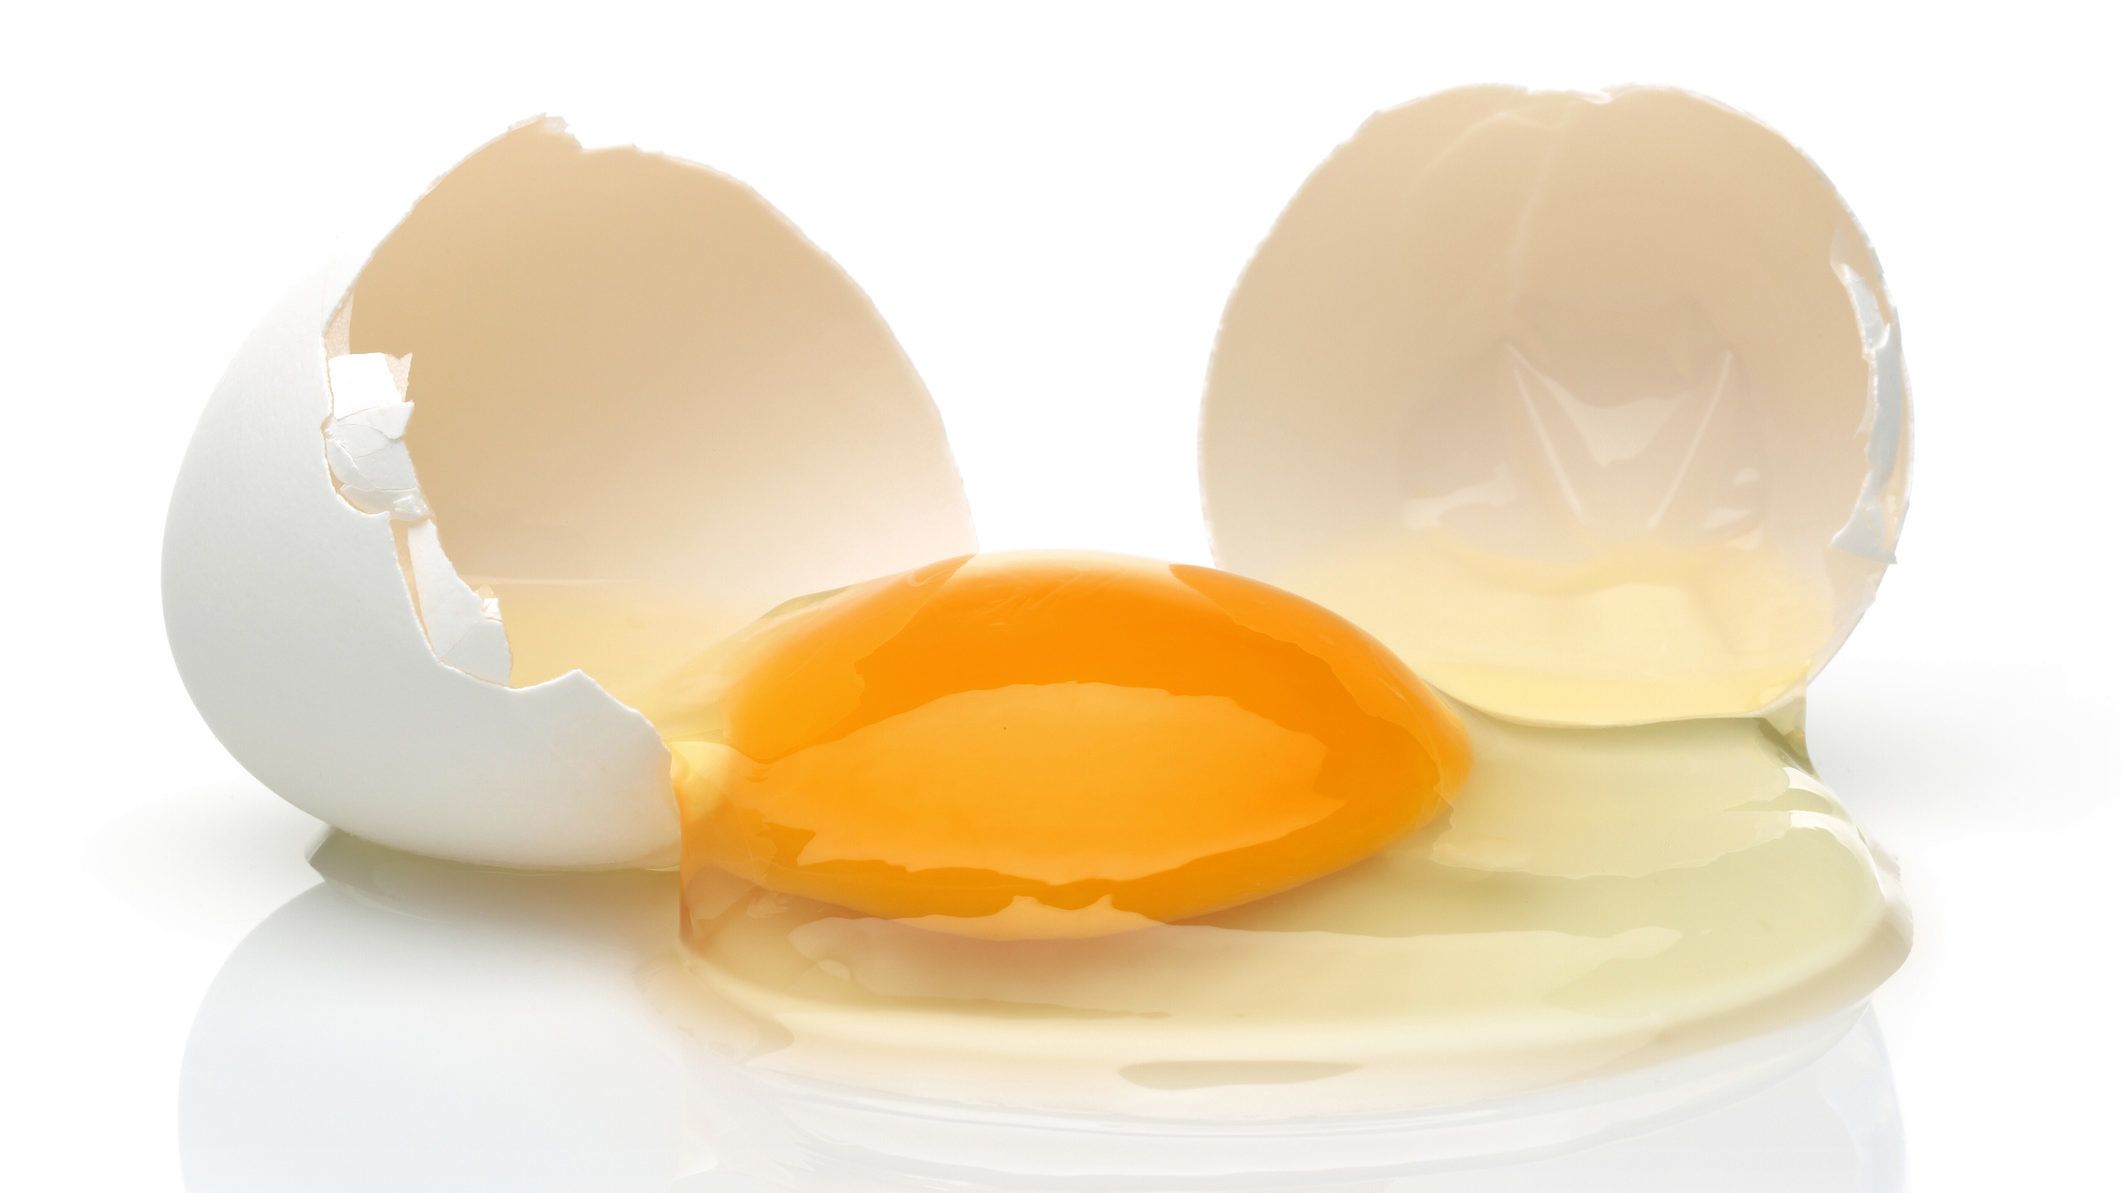 Egy vegán blogger számításai szerint 5 tojás egészségtelenebb egy szál ciginél